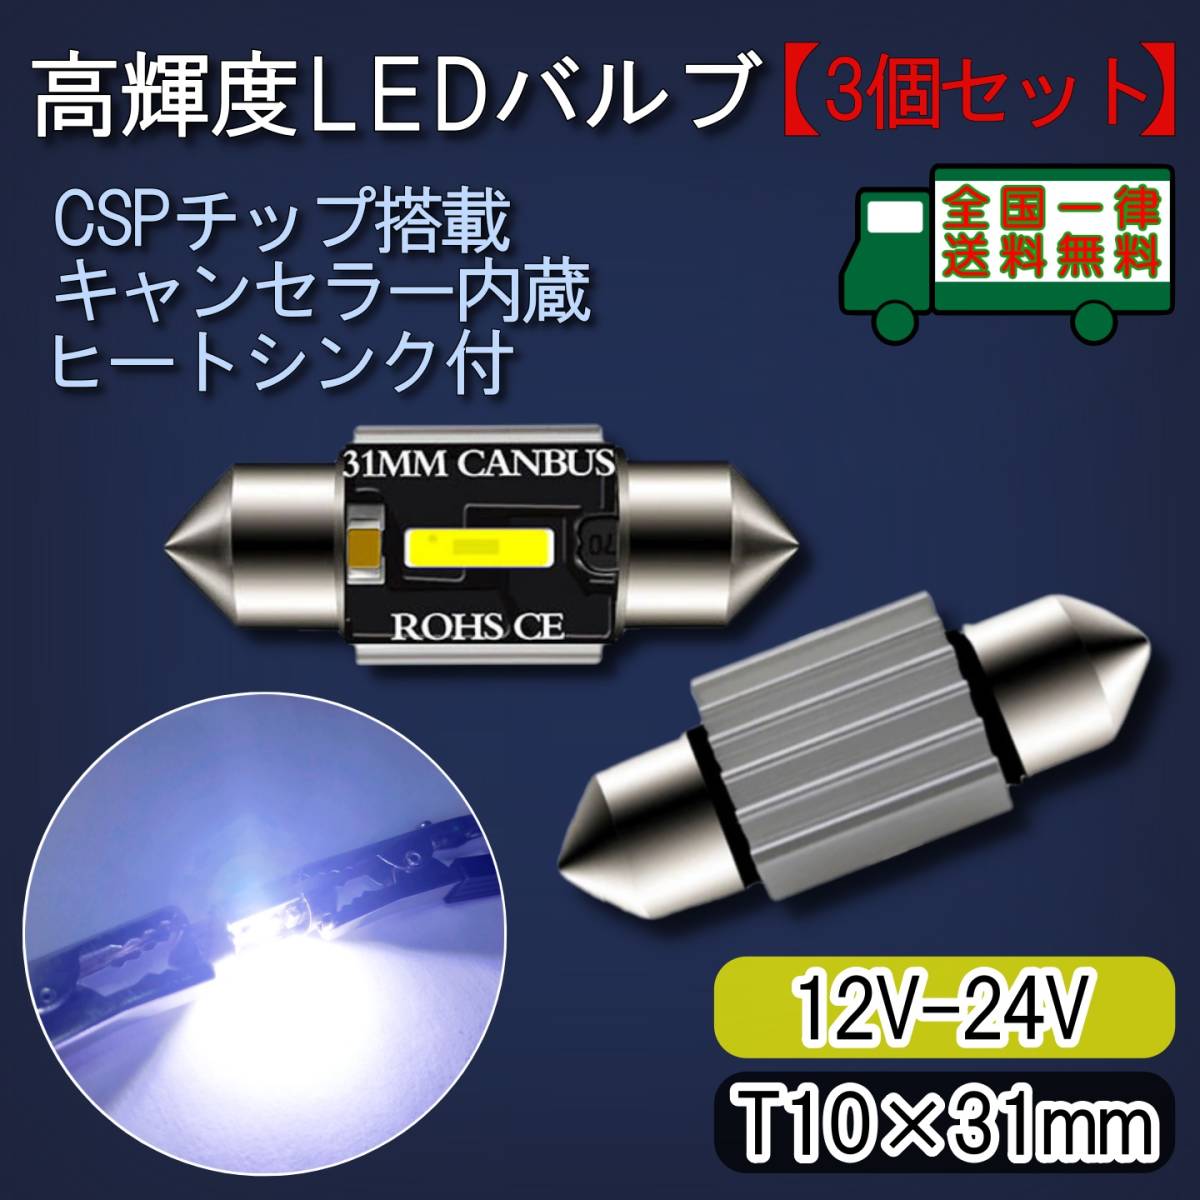 2個セットT10x31mmキャンセラ内蔵LED【ルームランプ